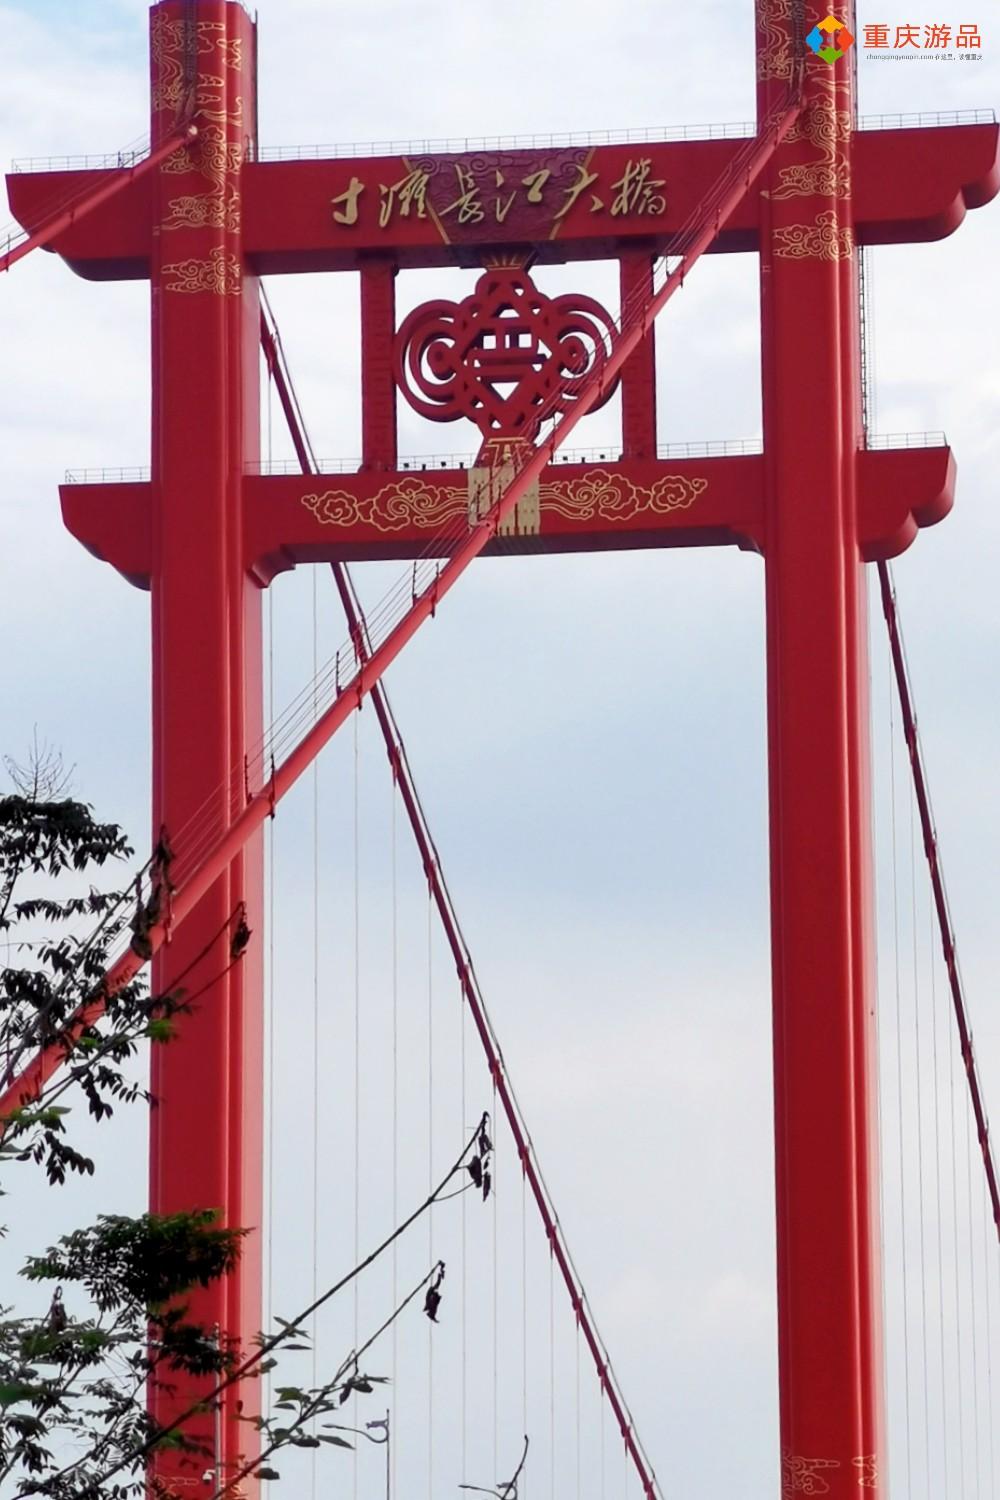 山水桥都,看重庆!寸滩长江大桥修建5年,总投资高达22亿